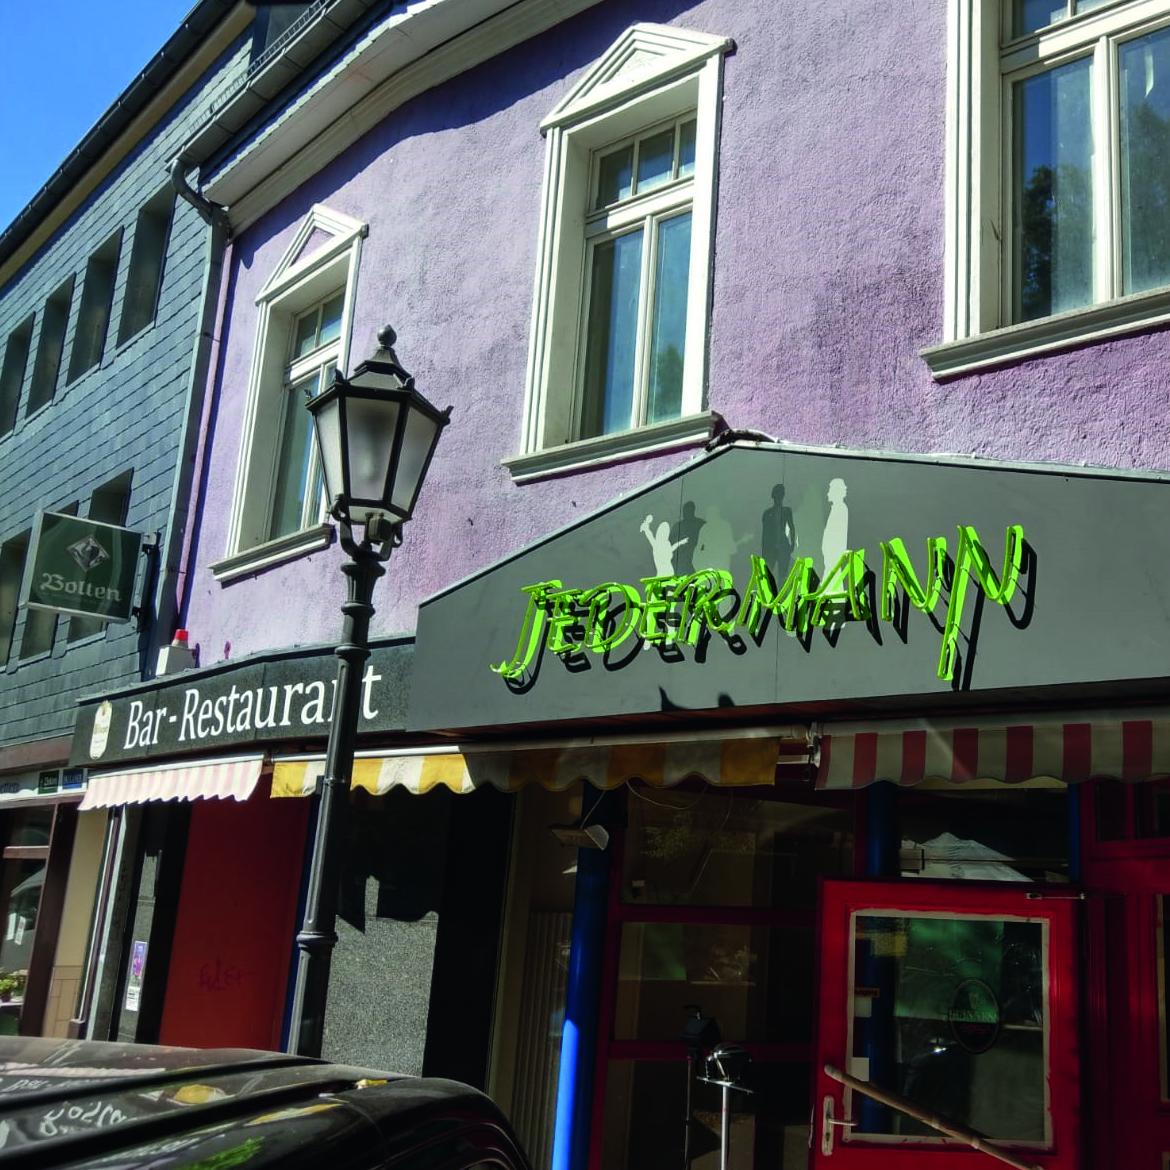 Restaurant "Jedermann- - Jedermann-Gastro GmbH" in Erkelenz